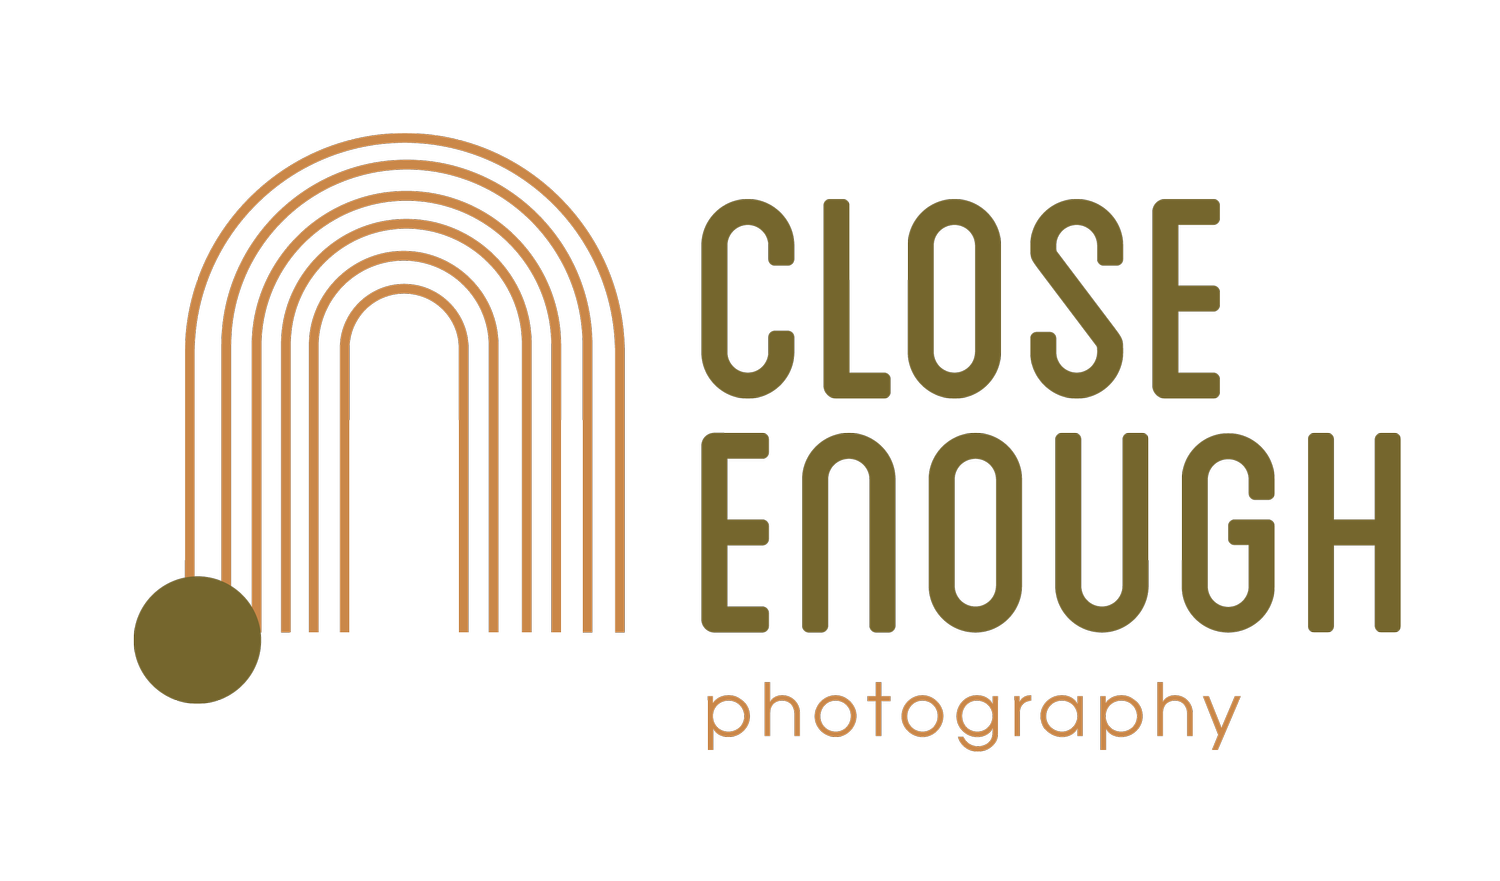 Close Enough Photography